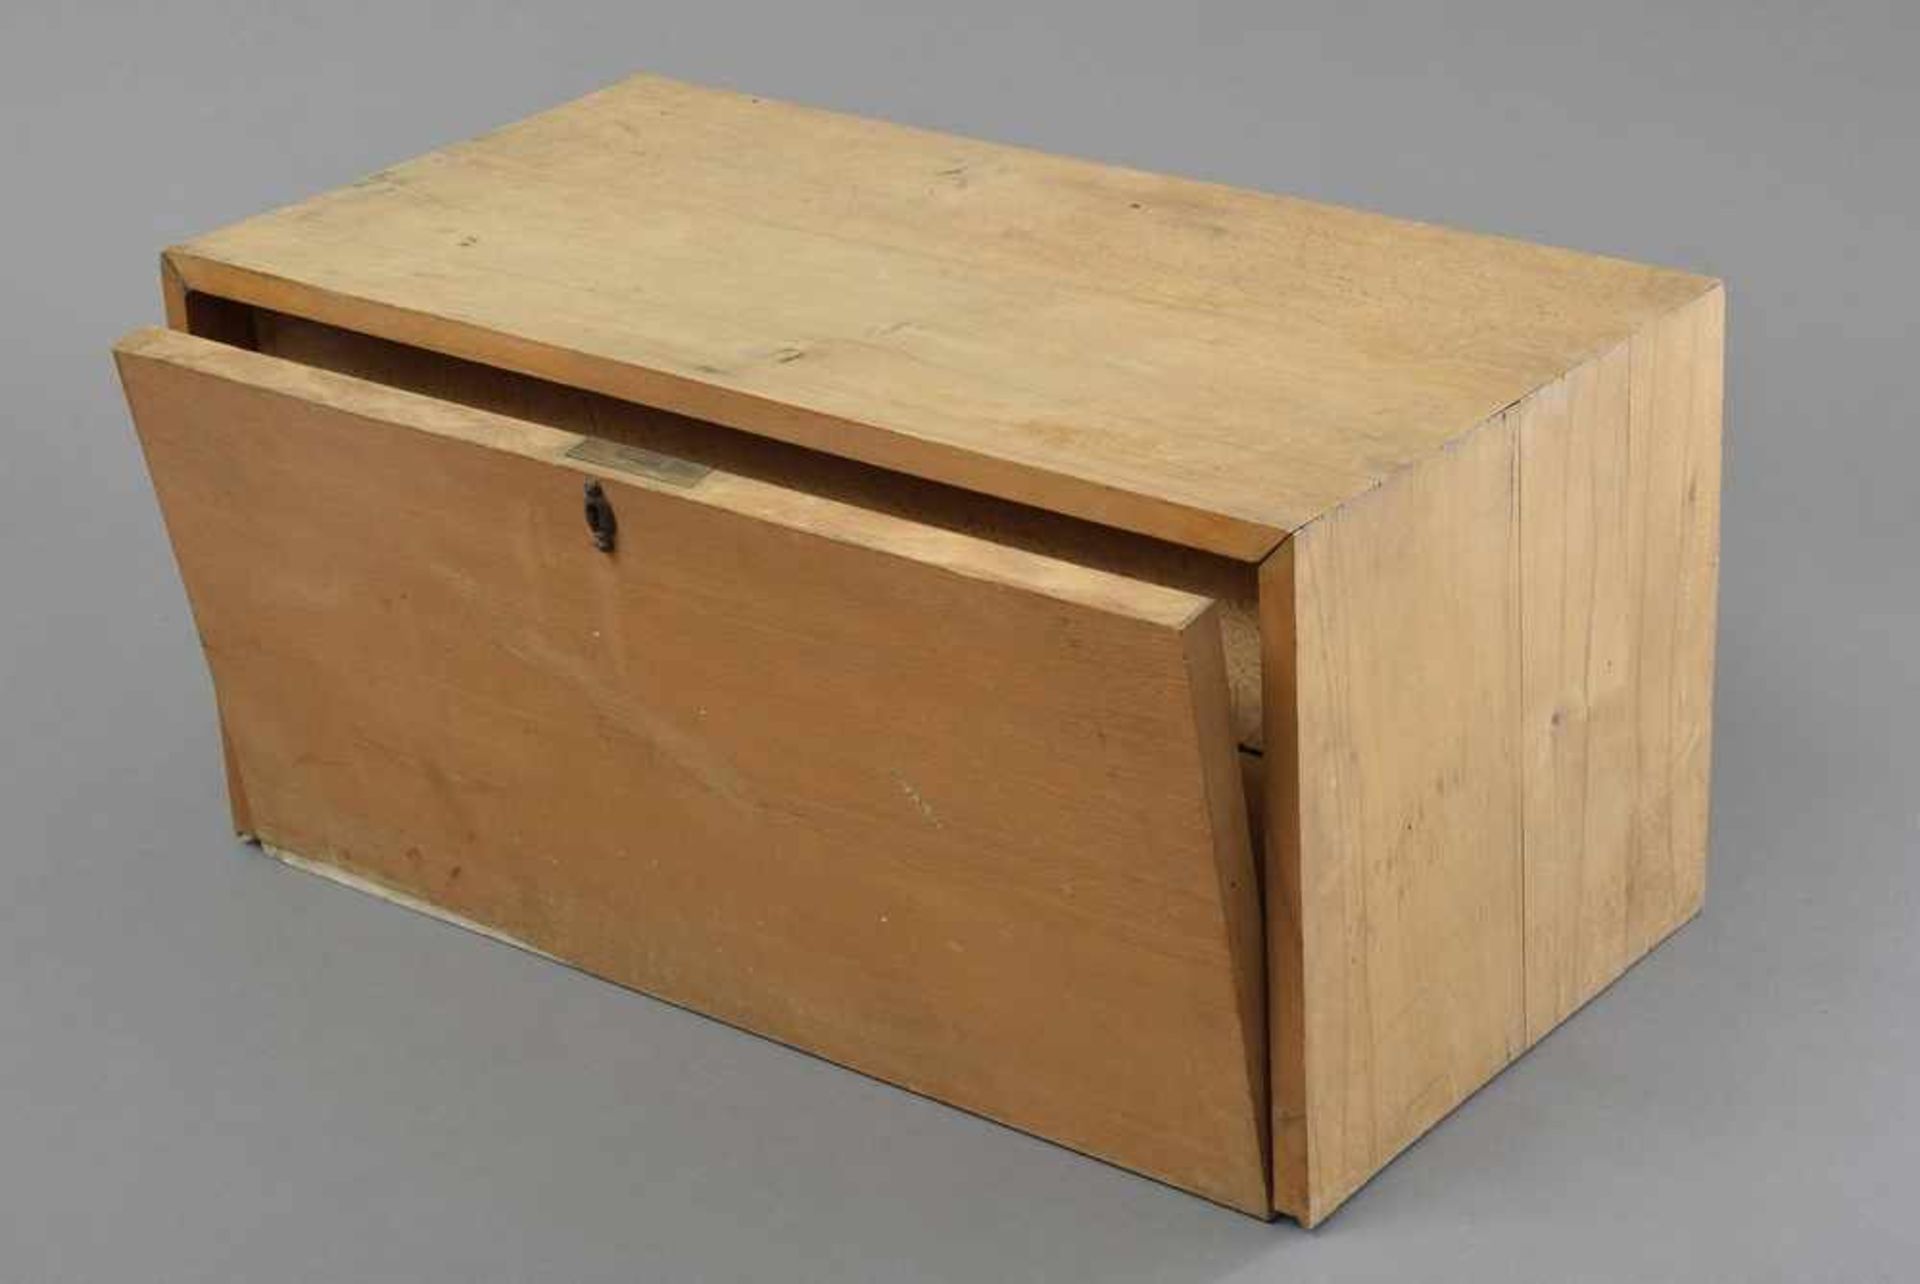 Weidenholz Kasten mit Sammlung von Heilkräutern und "Drogen", dazu: Dokumentation, 27x55x28cm - Bild 2 aus 4